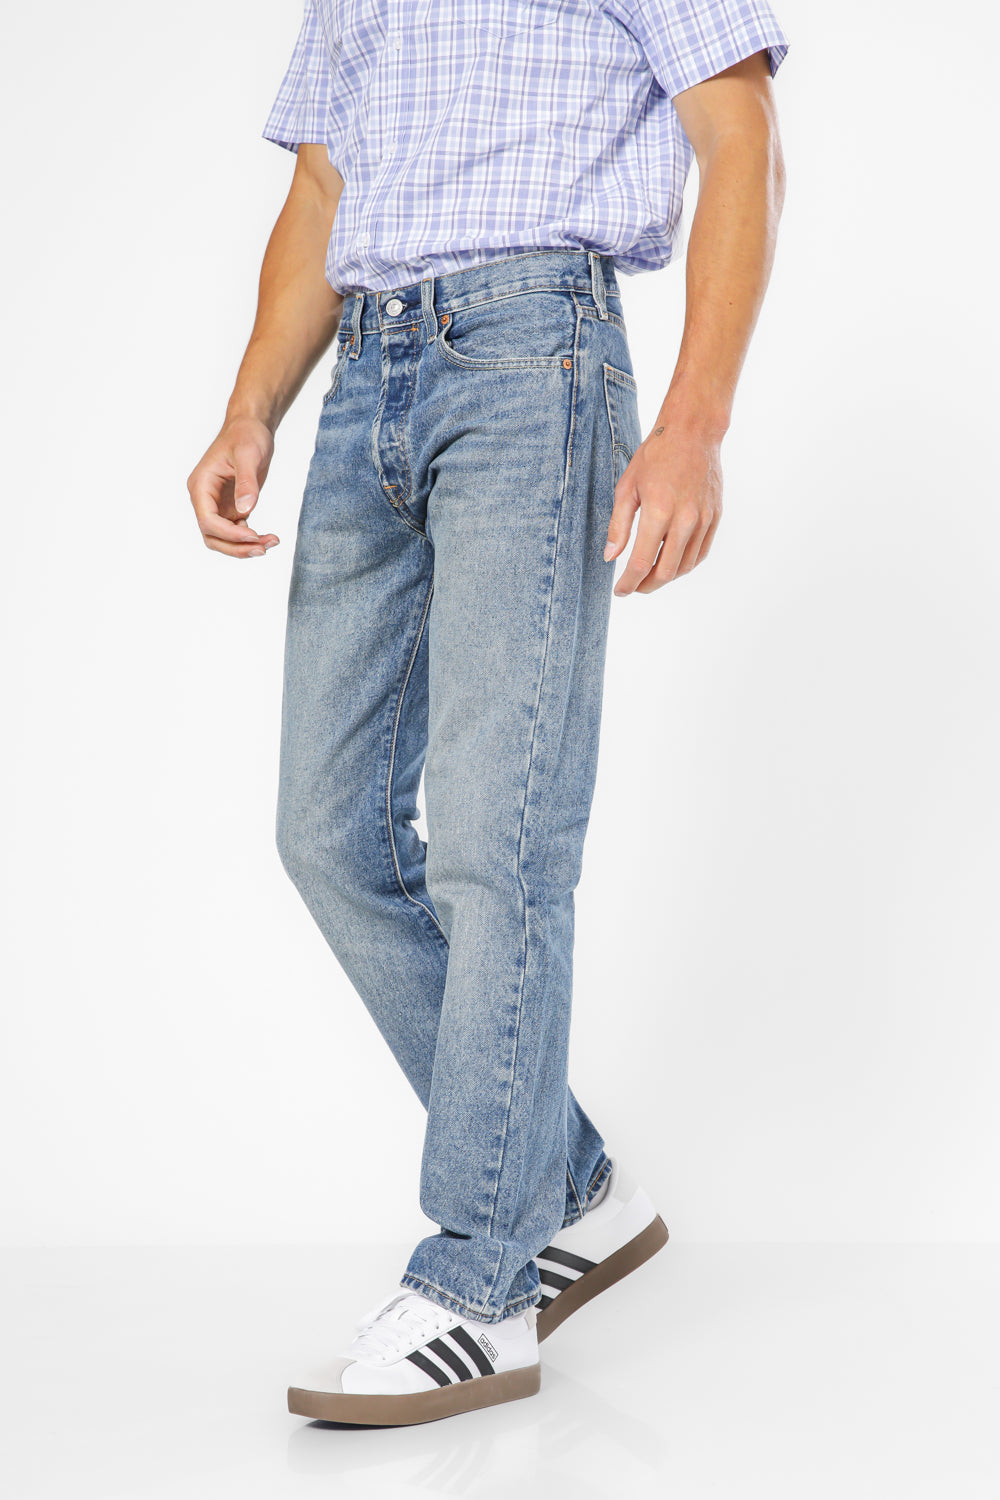 ג'ינס 501 בצבע כחול בהיר